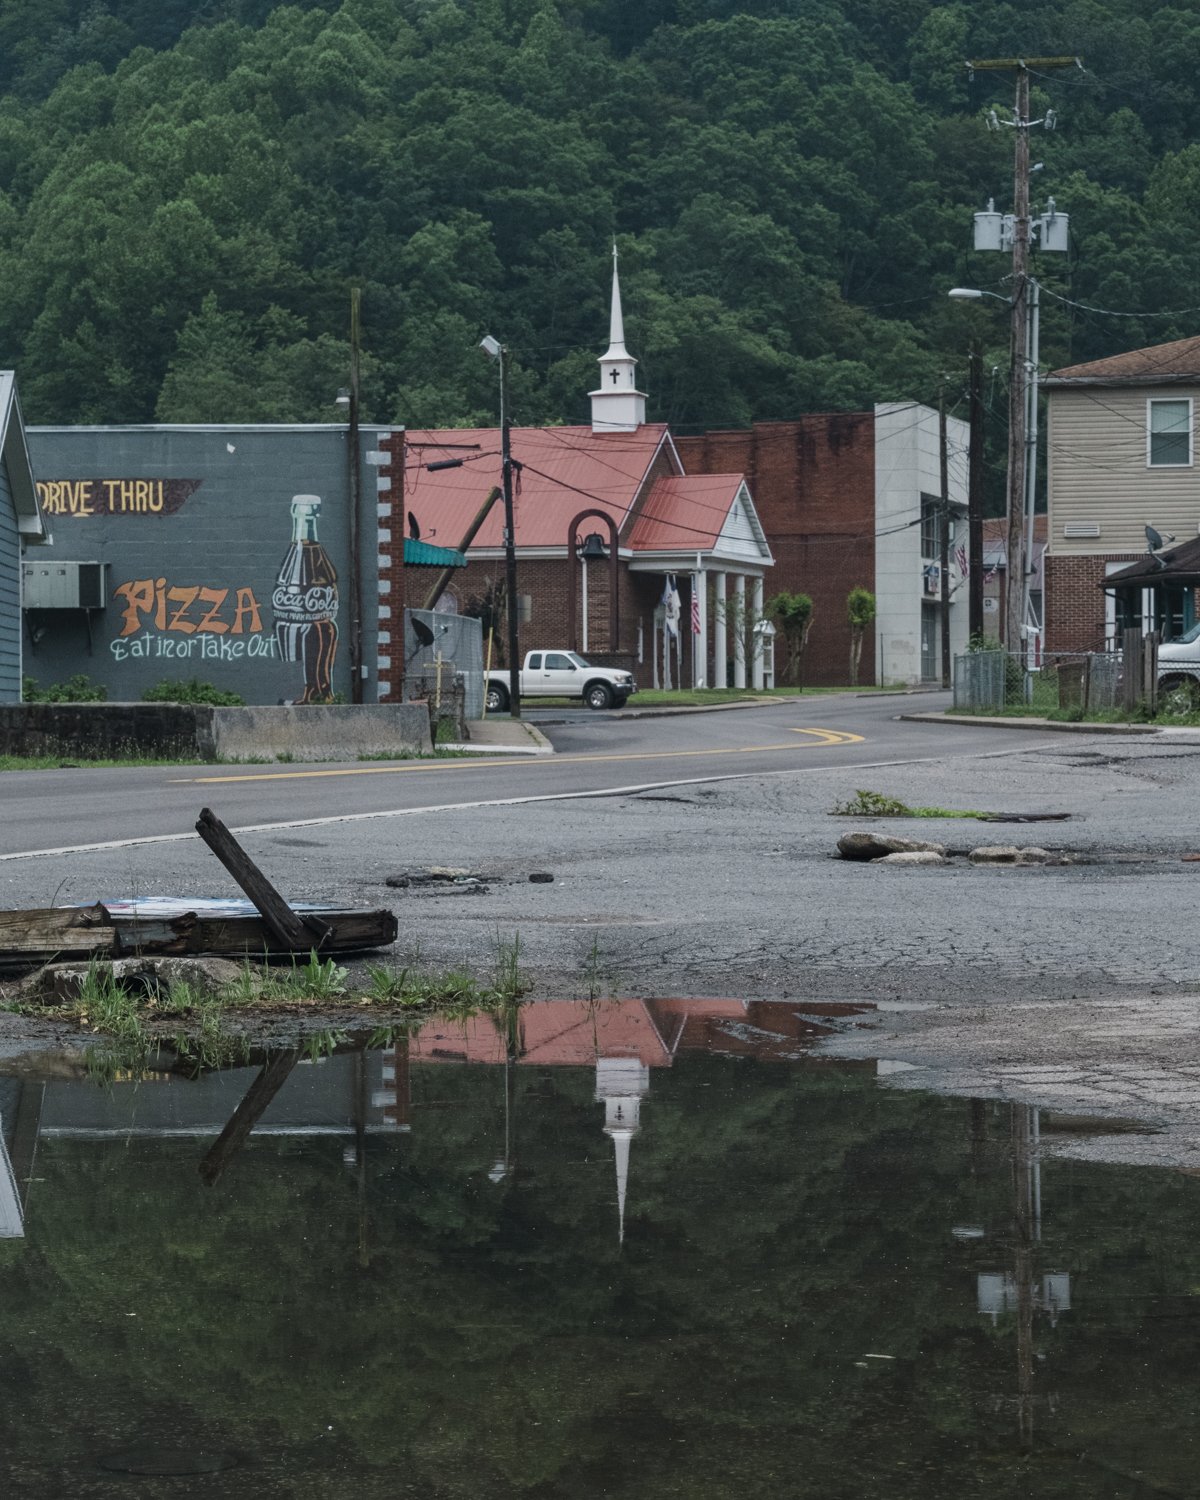  Delbarton, Mingo County, West Virginia. 